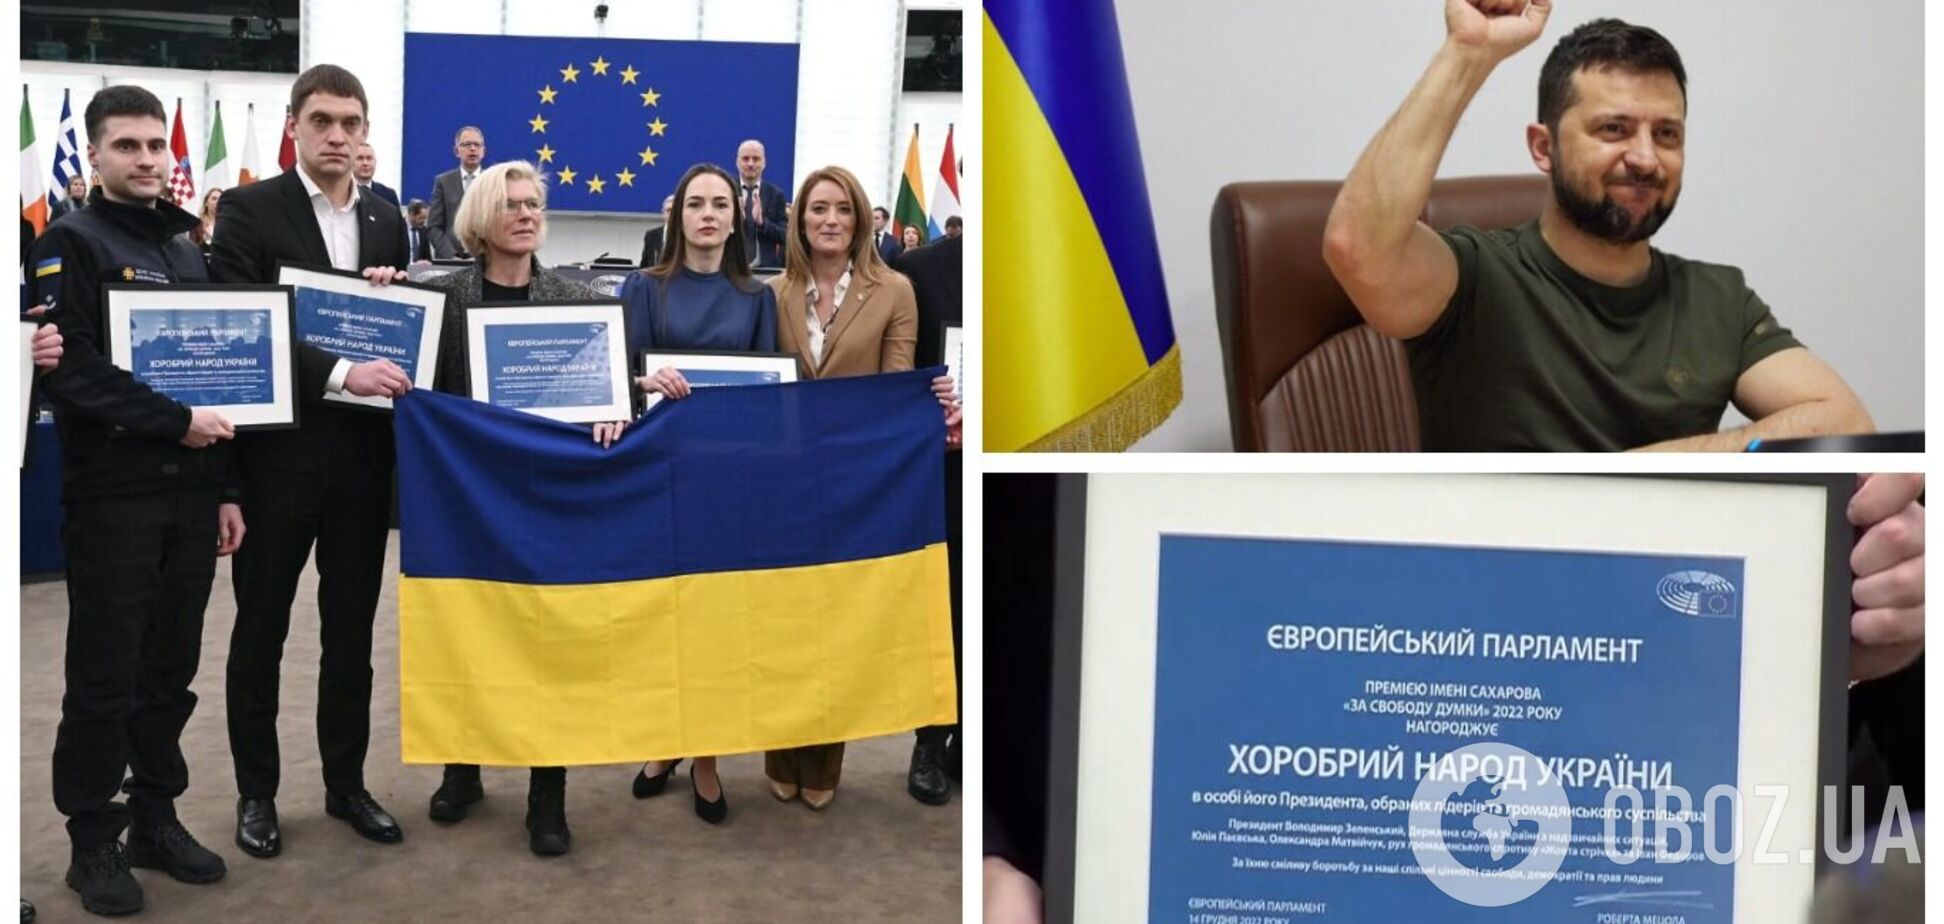 'Защищает демократию, свободу и верховенство права': украинскому народу вручили премию Сахарова. Видео